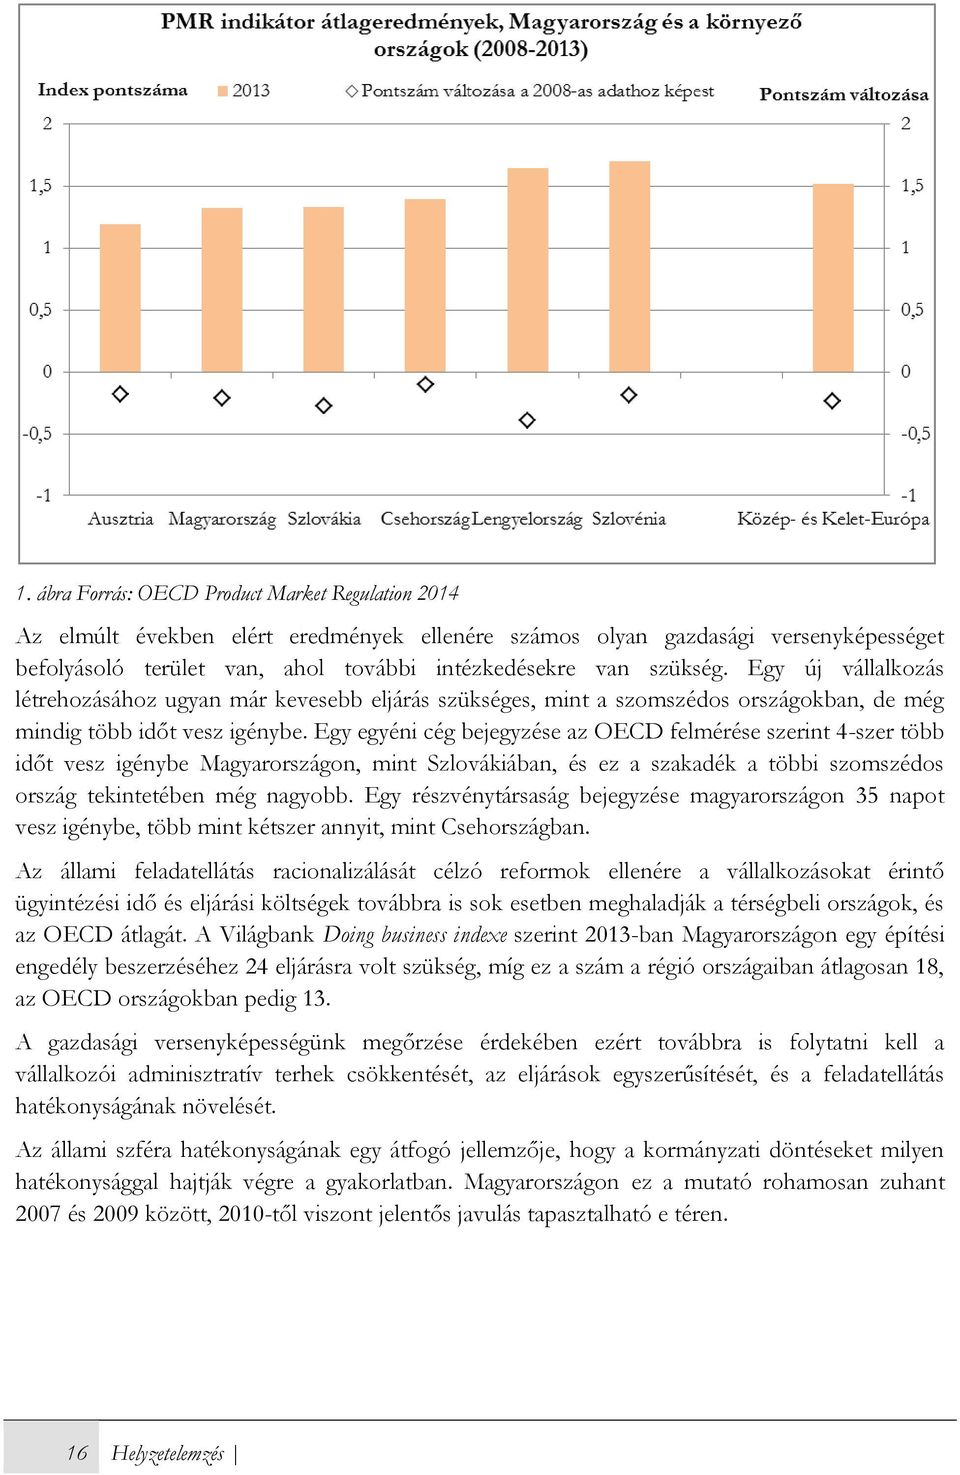 Egy egyéni cég bejegyzése az OECD felmérése szerint 4-szer több időt vesz igénybe Magyarországon, mint Szlovákiában, és ez a szakadék a többi szomszédos ország tekintetében még nagyobb.